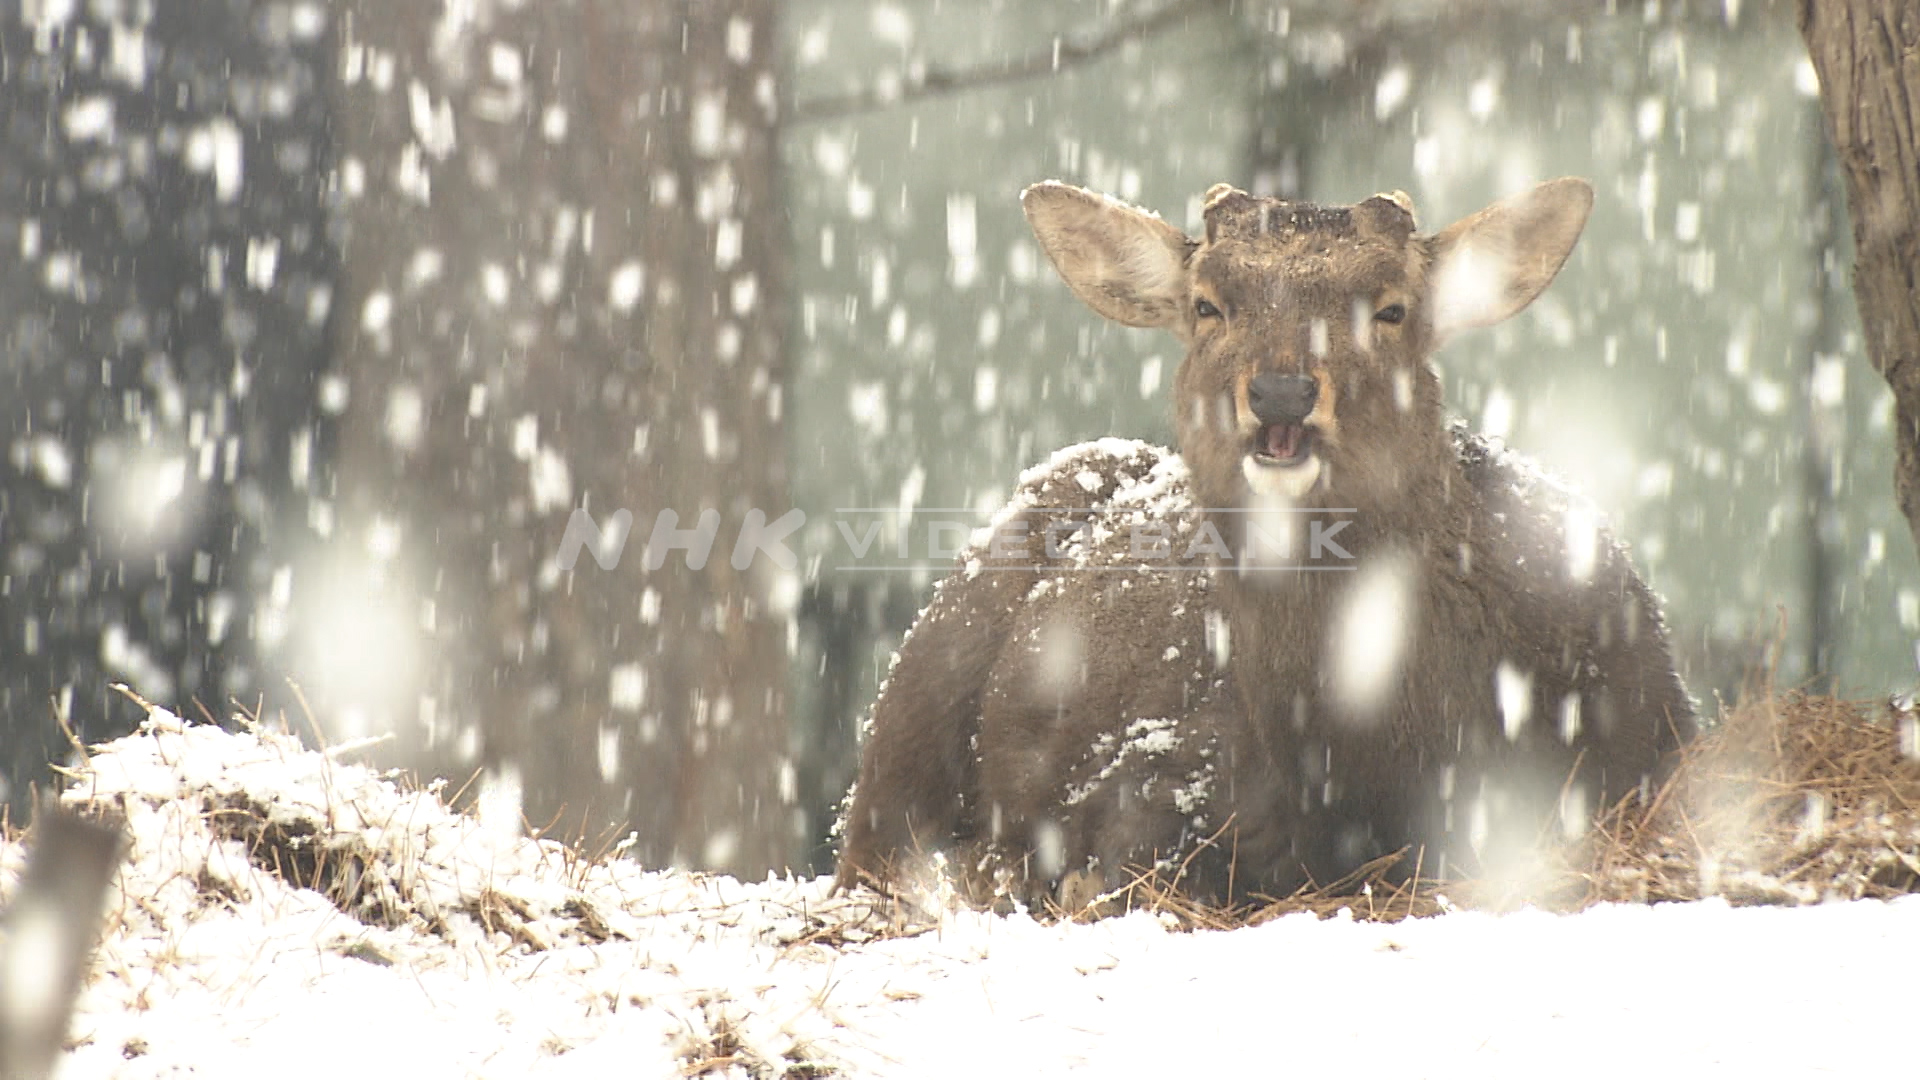 Deer in the snow falling Nara Park